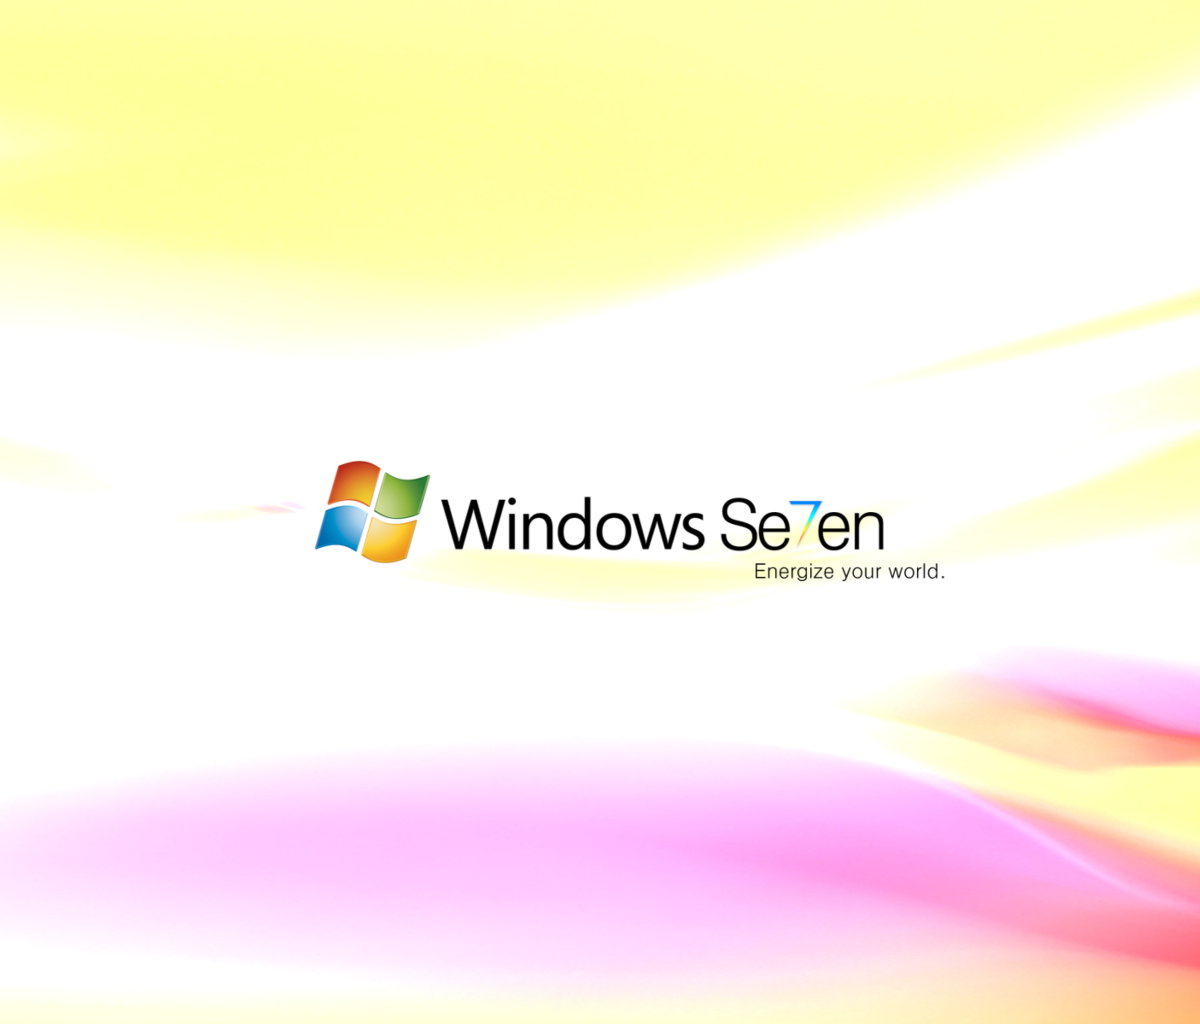 Windows Se7en wallpaper 1200x1024